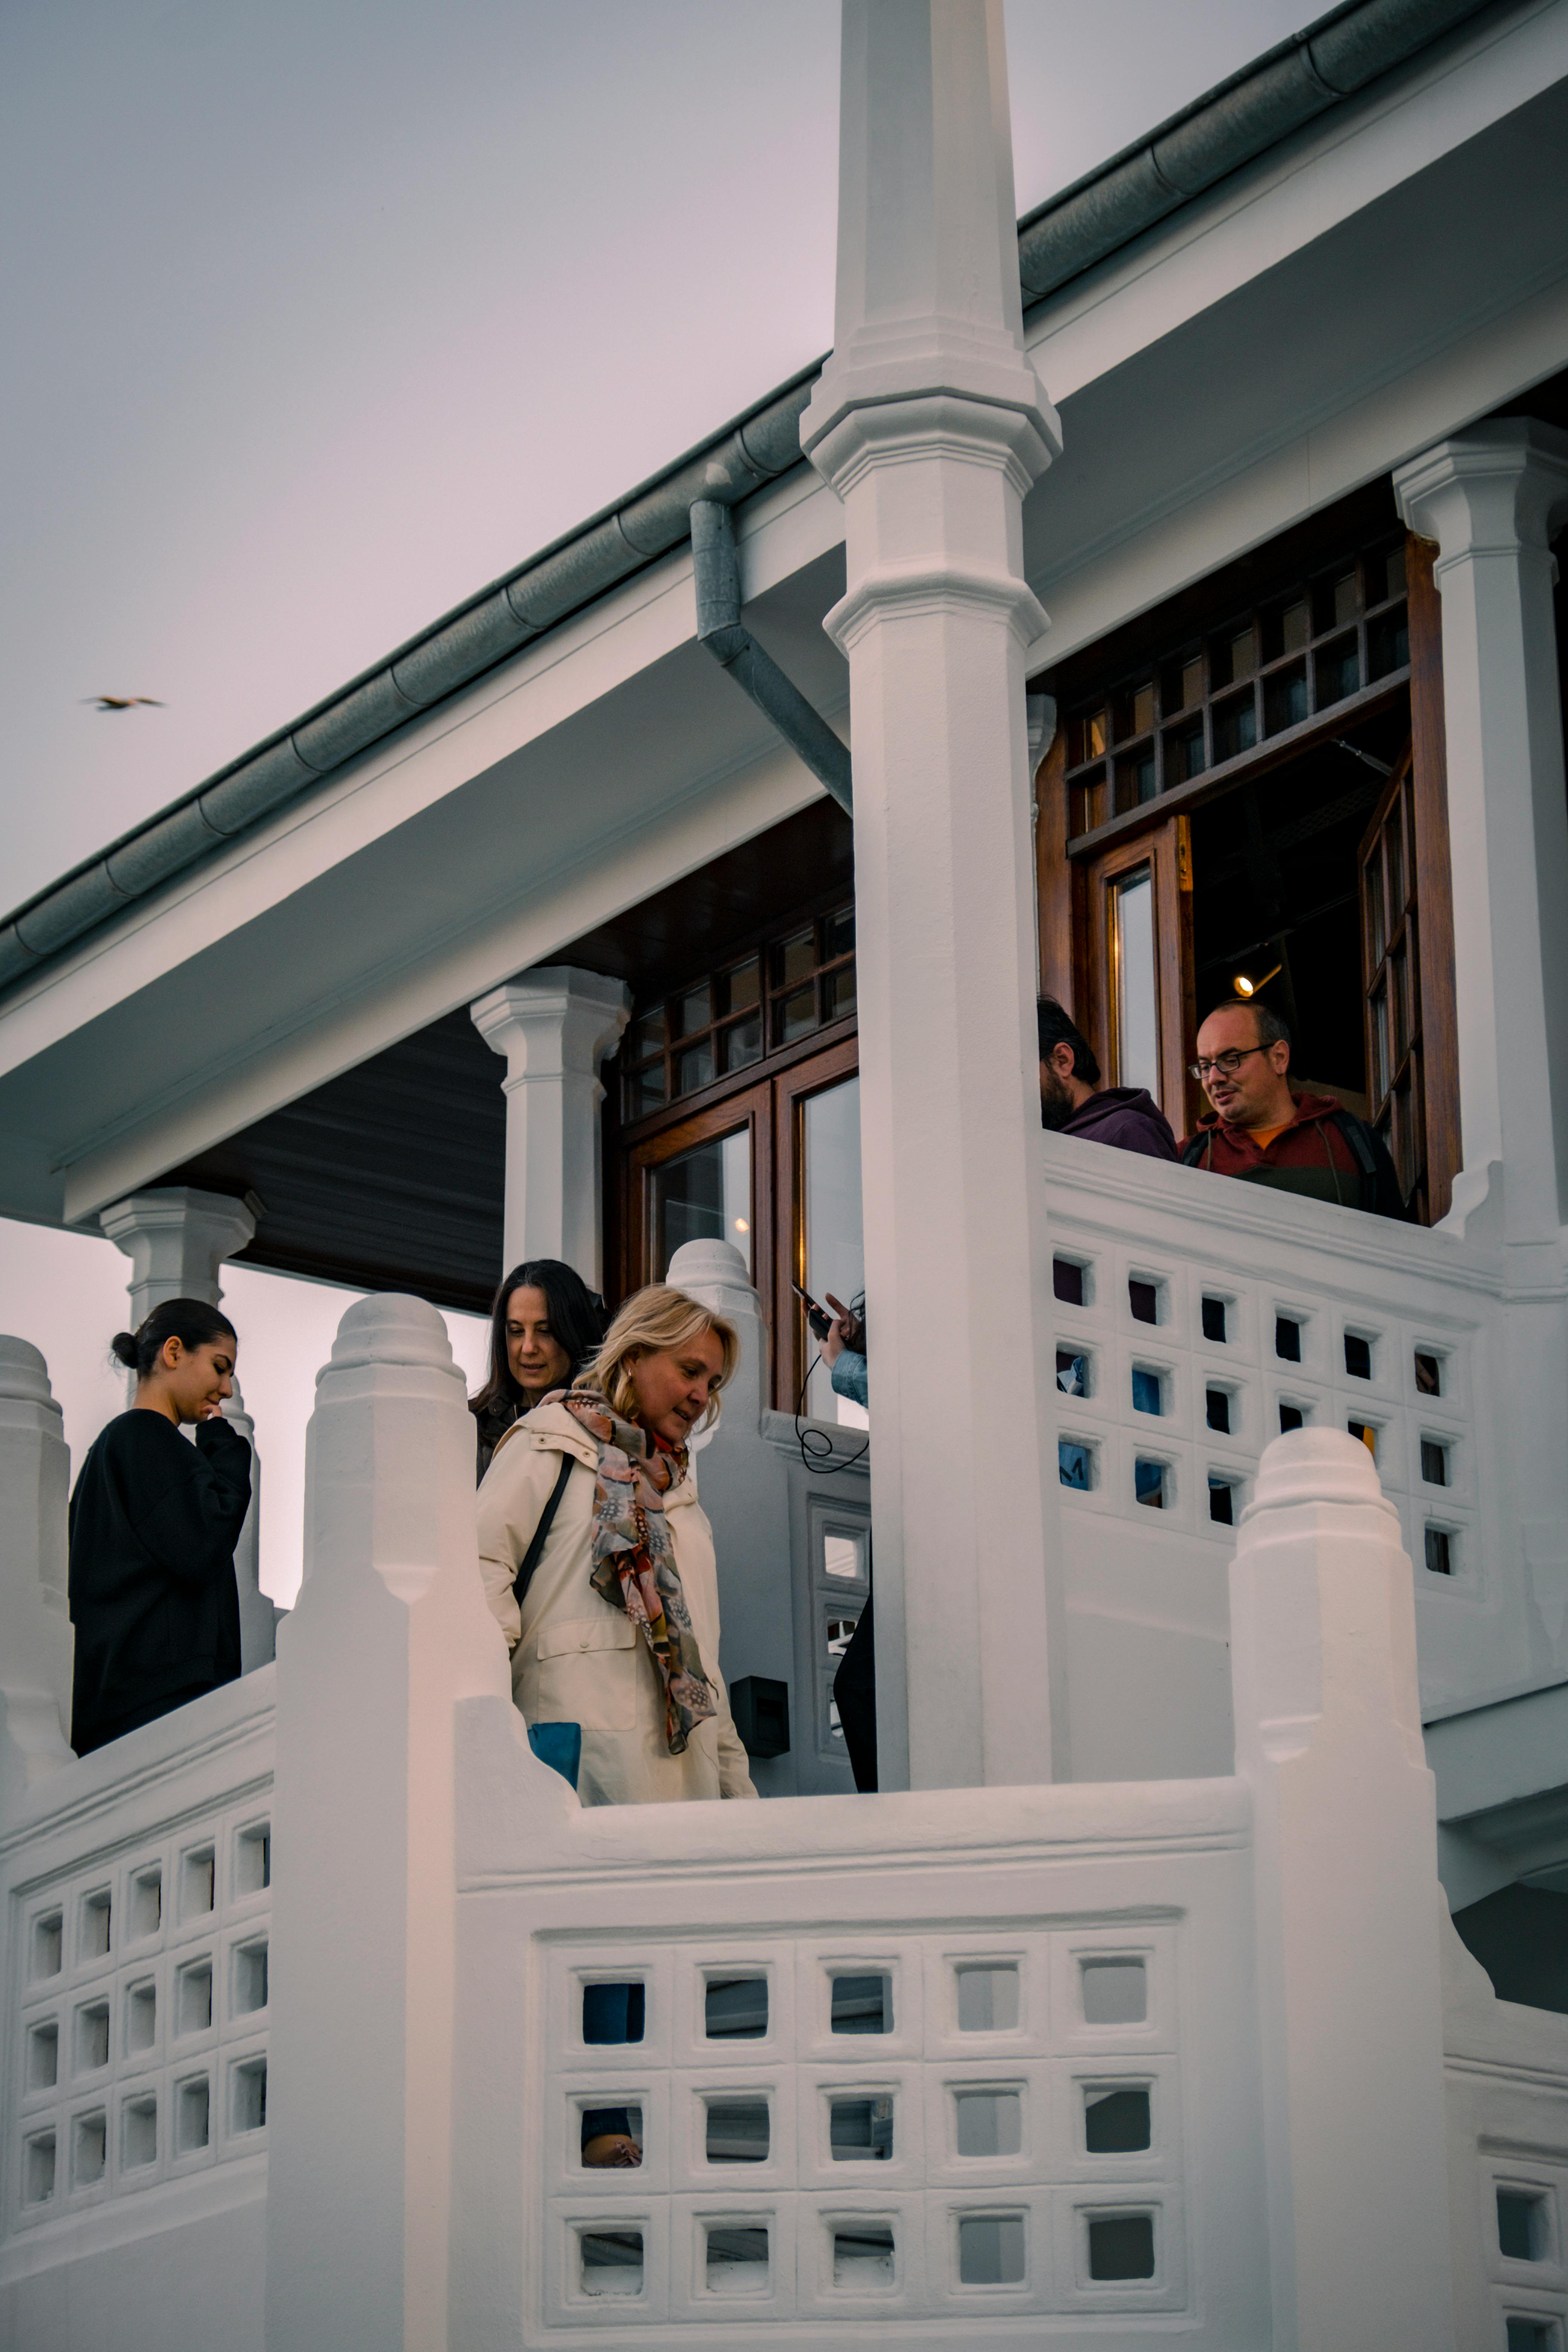 Menschen auf der Treppe vor einem Haus | Quelle: Pexels